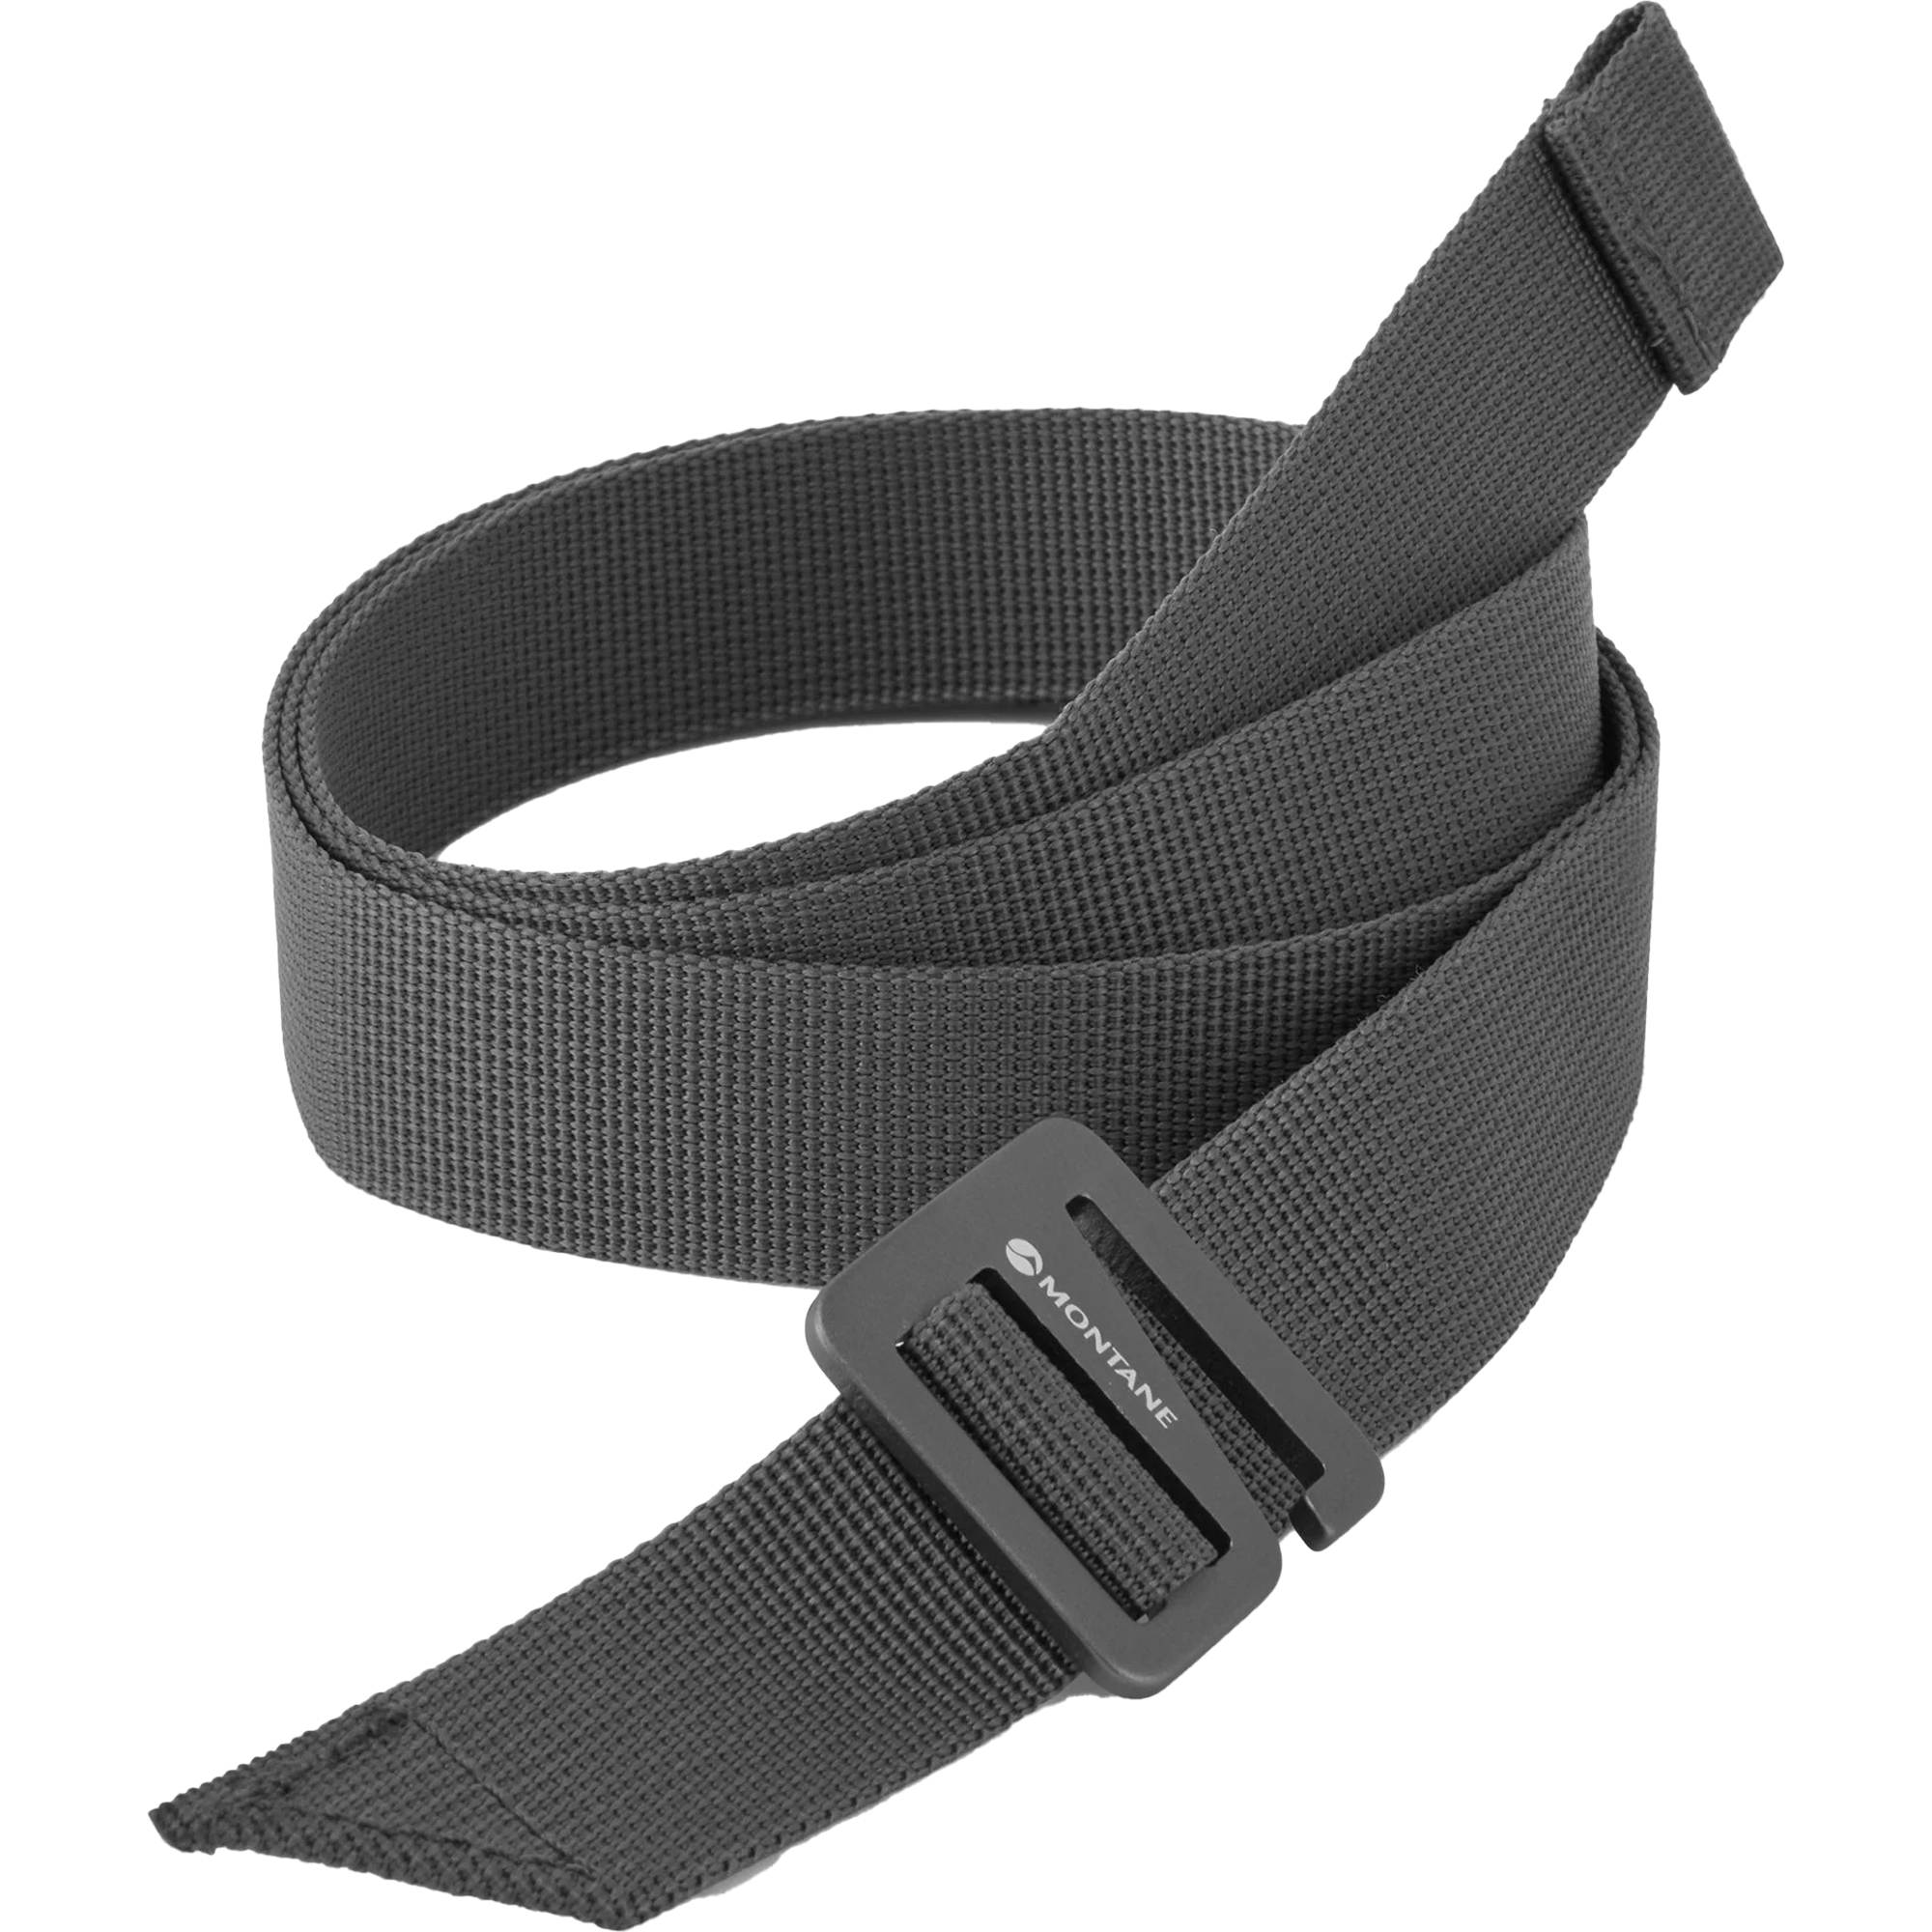 Webbed belt - Wikipedia